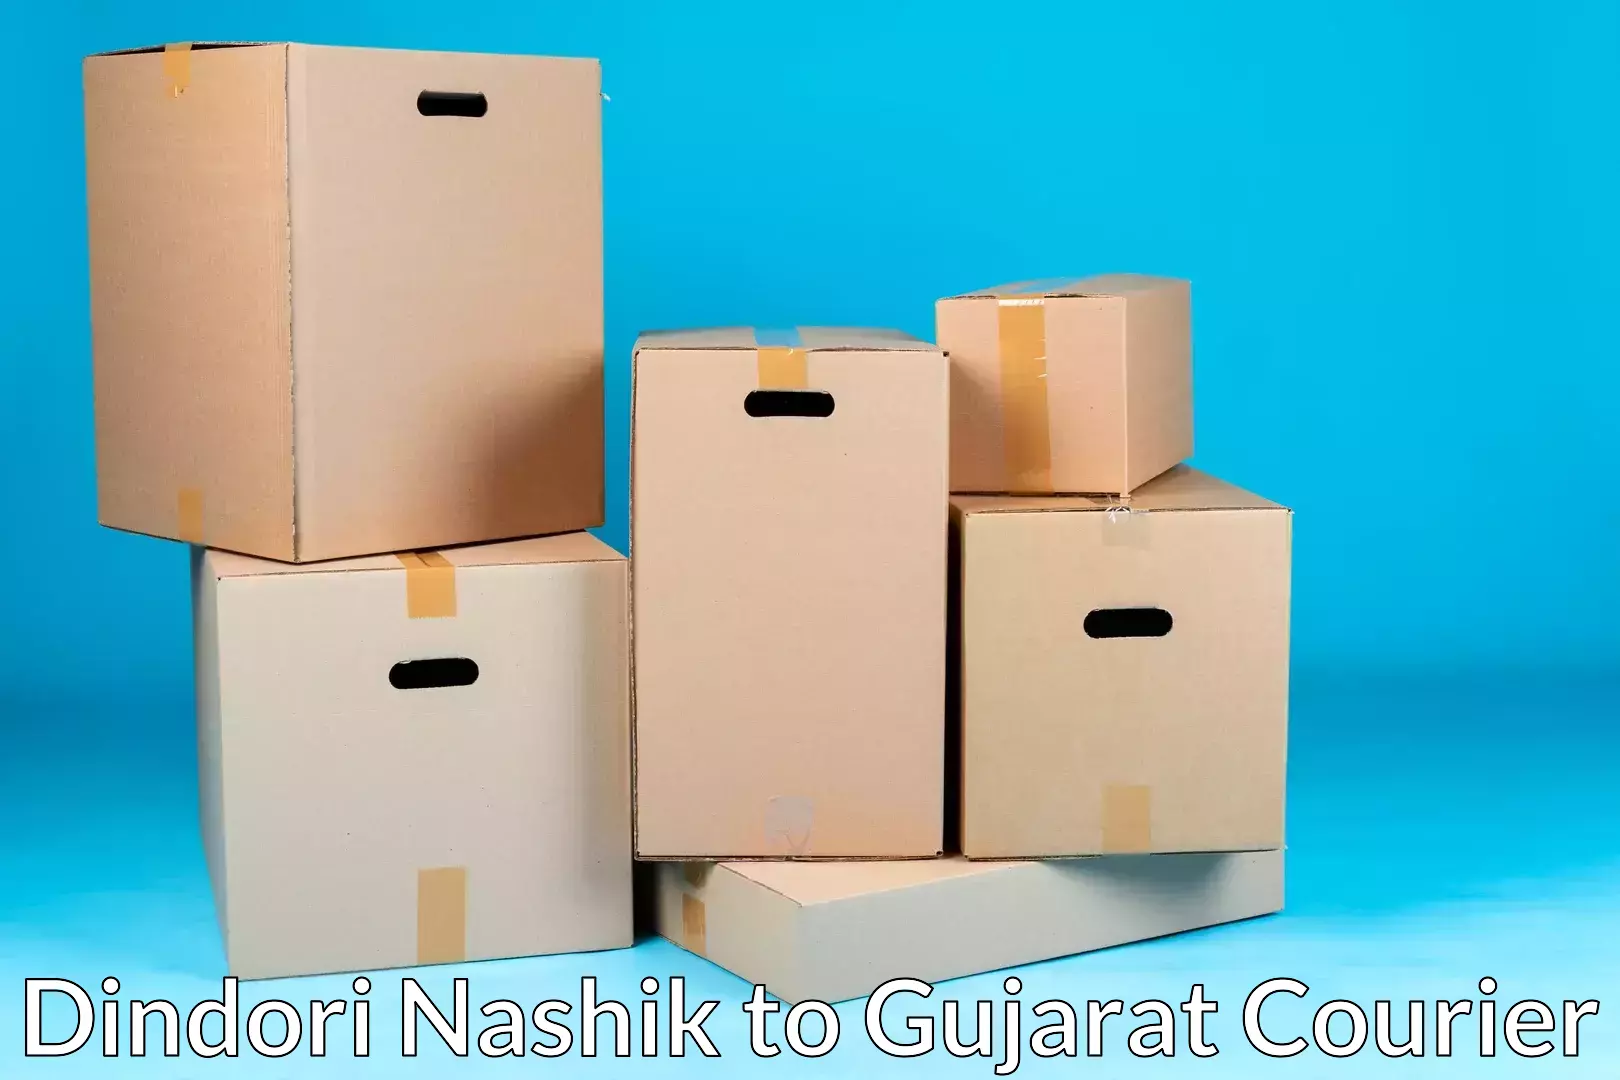 Furniture moving experts Dindori Nashik to Gondal